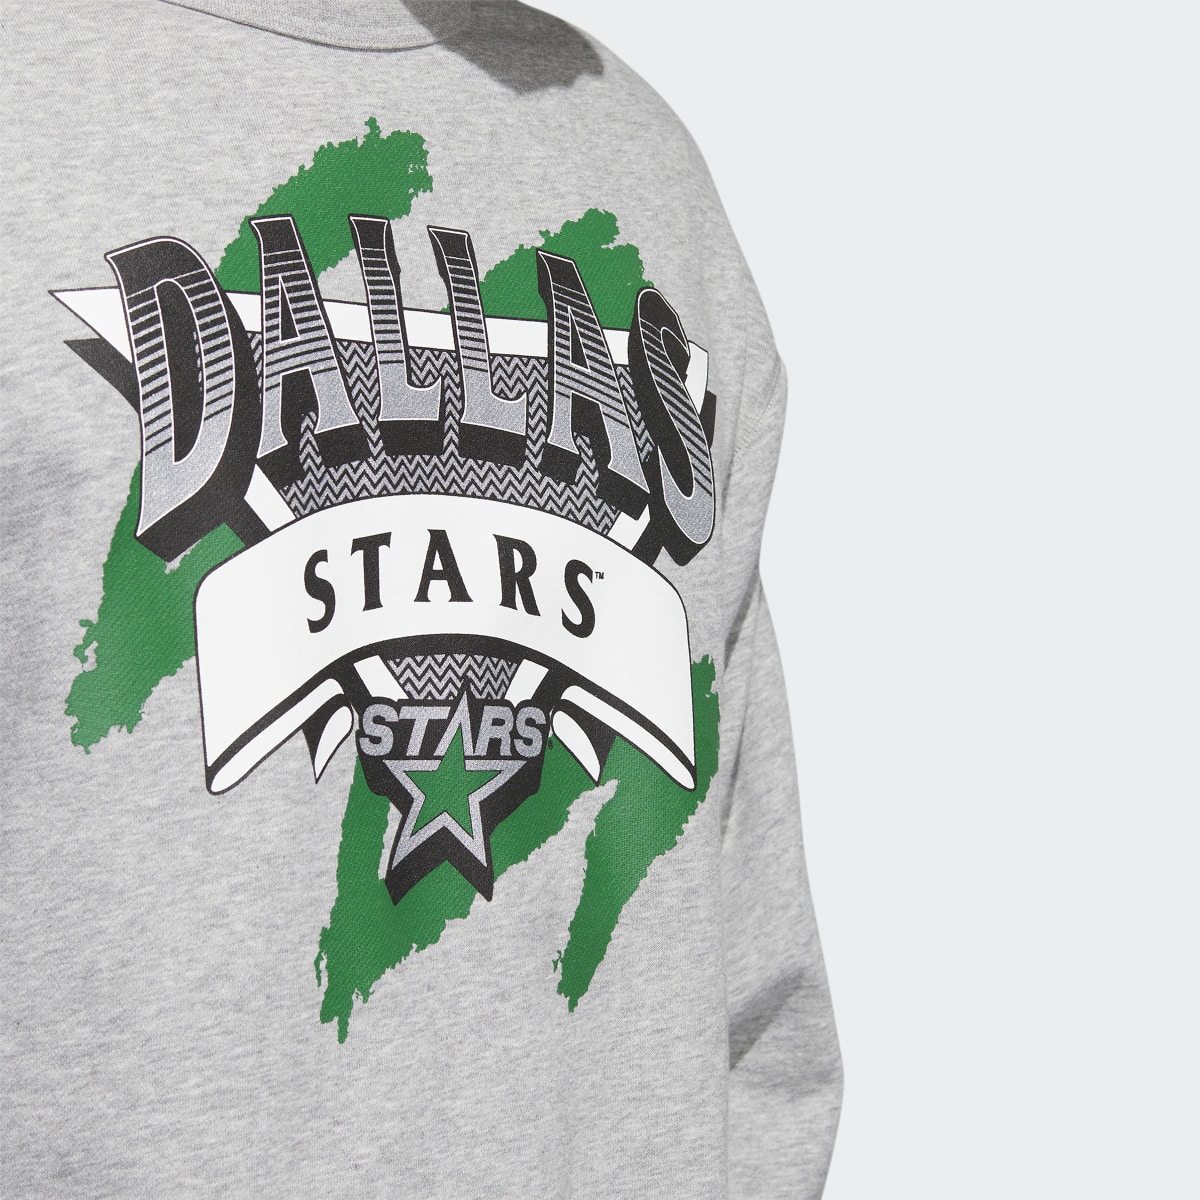 Adidas Stars Vintage Crew Sweatshirt. 6